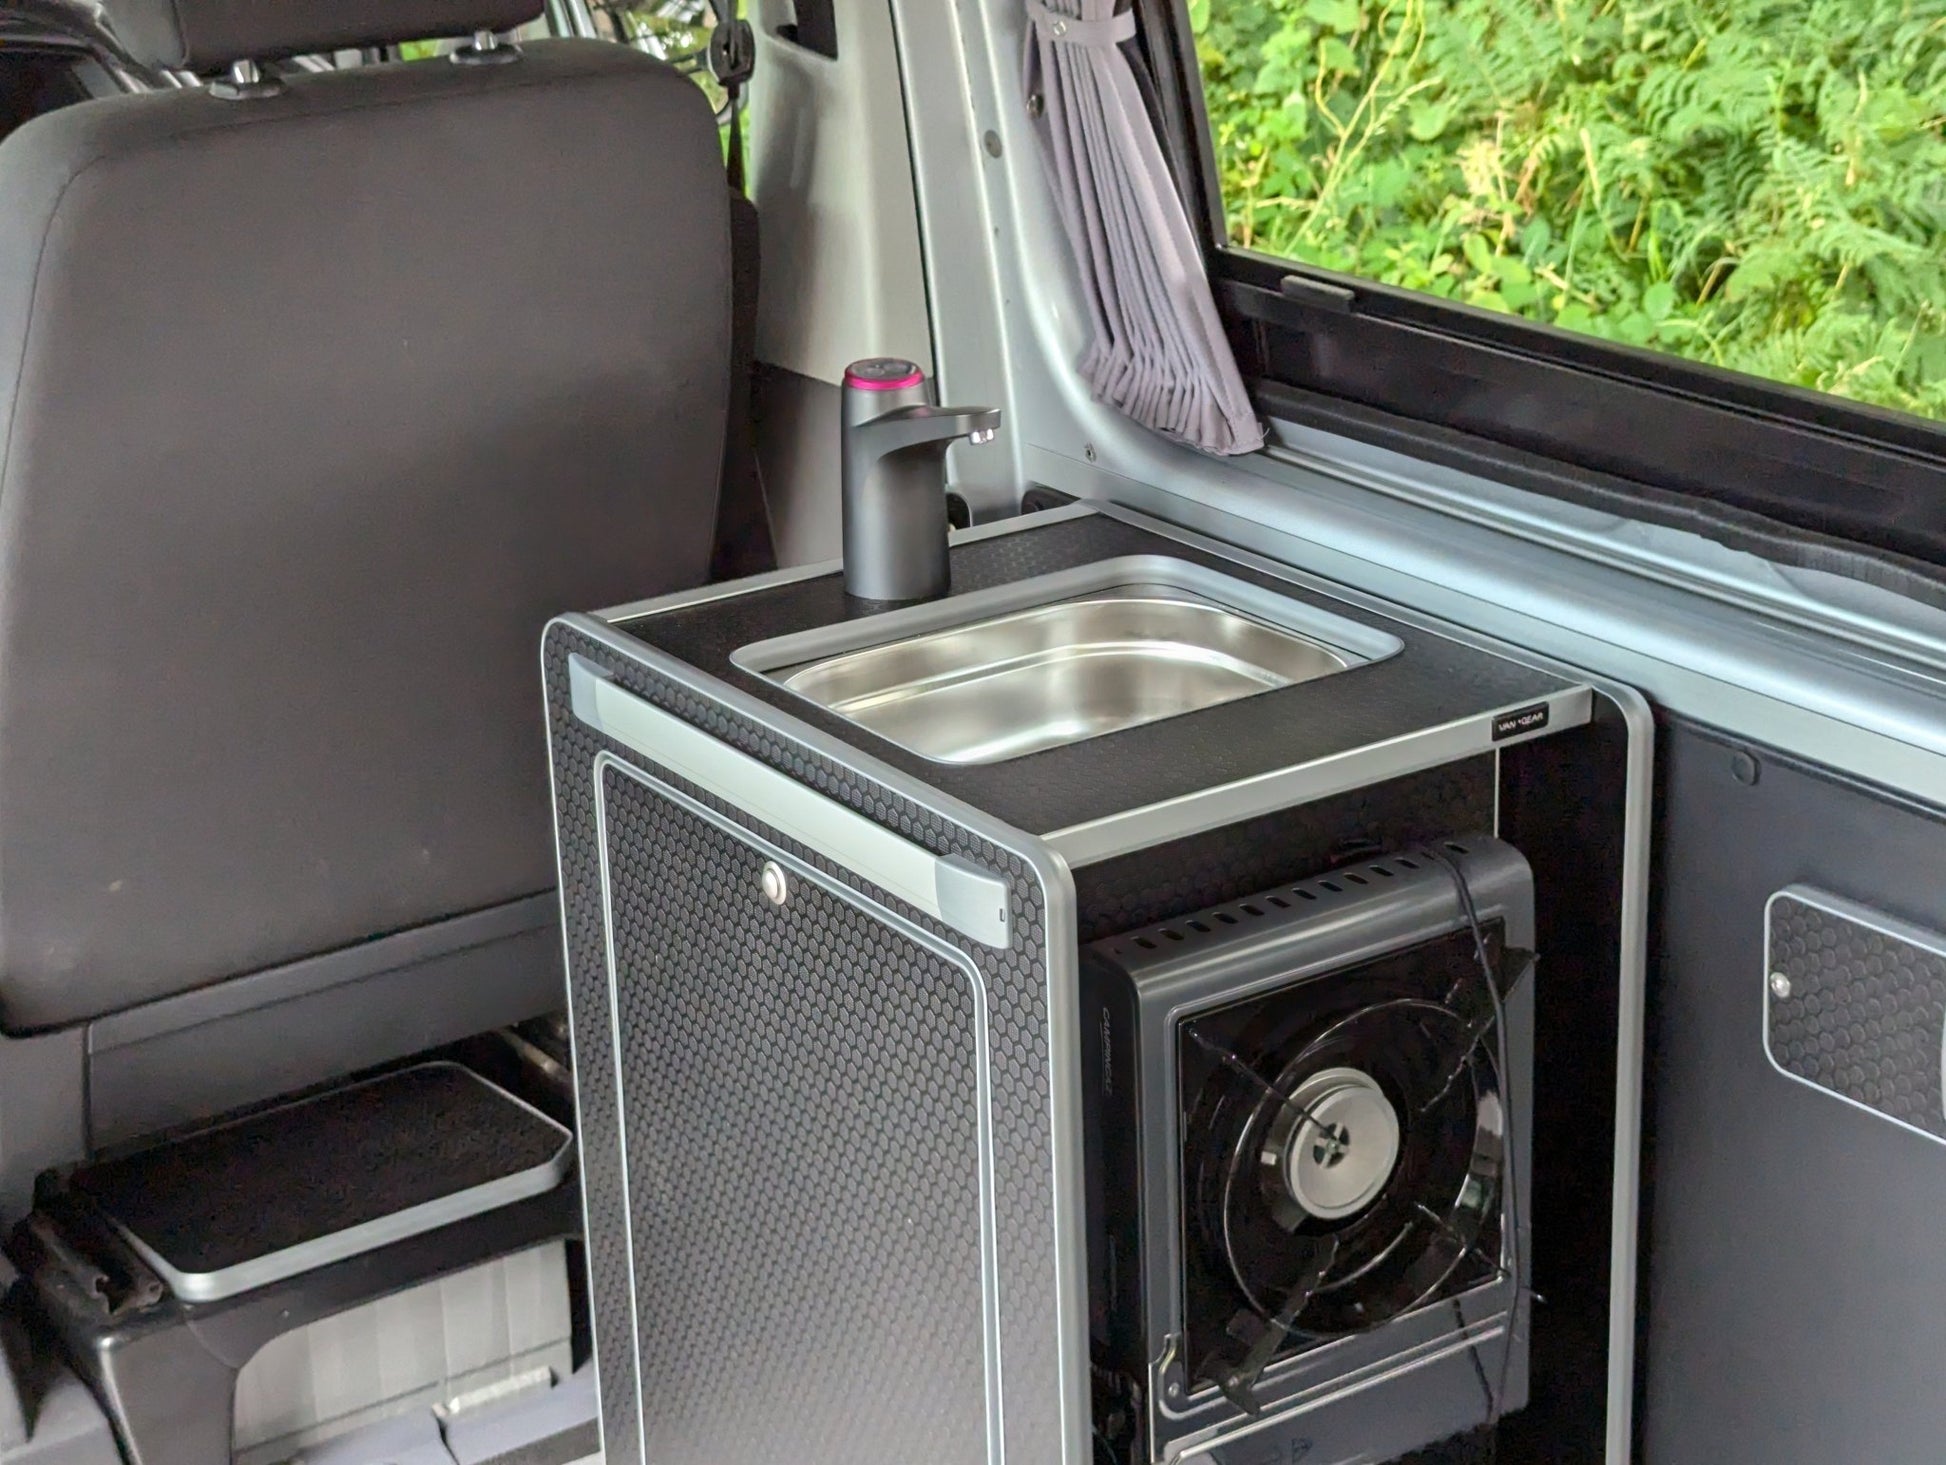 NEW Vangear Mini - Pod 2.2 Campervan Kitchen Pod (Black) NEW 2.2 - Vangear UK